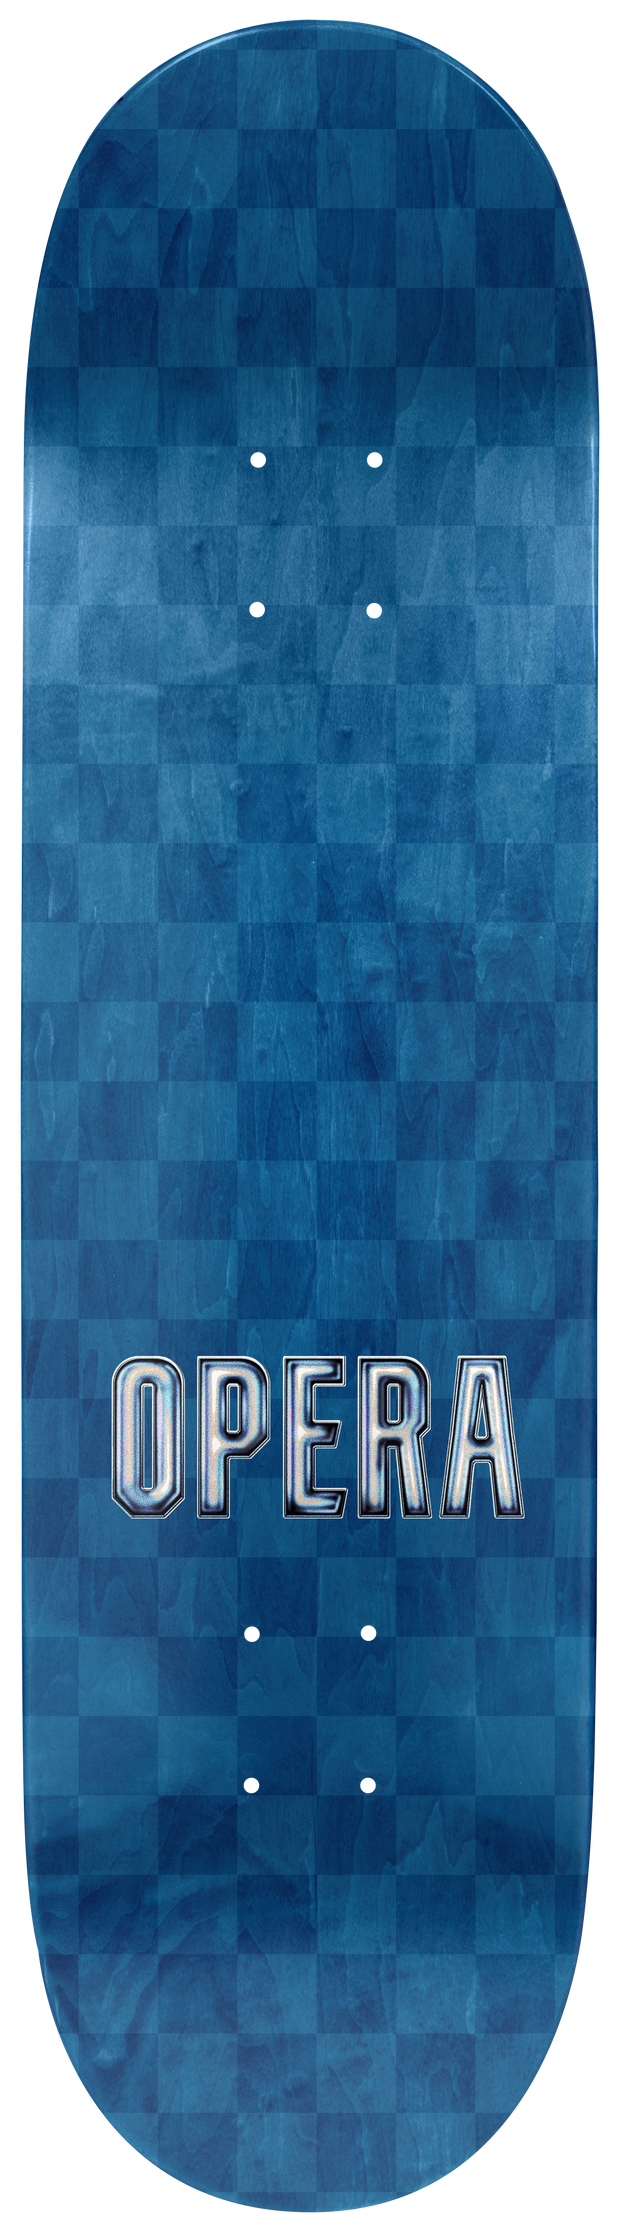 Opera   "Mask logo"